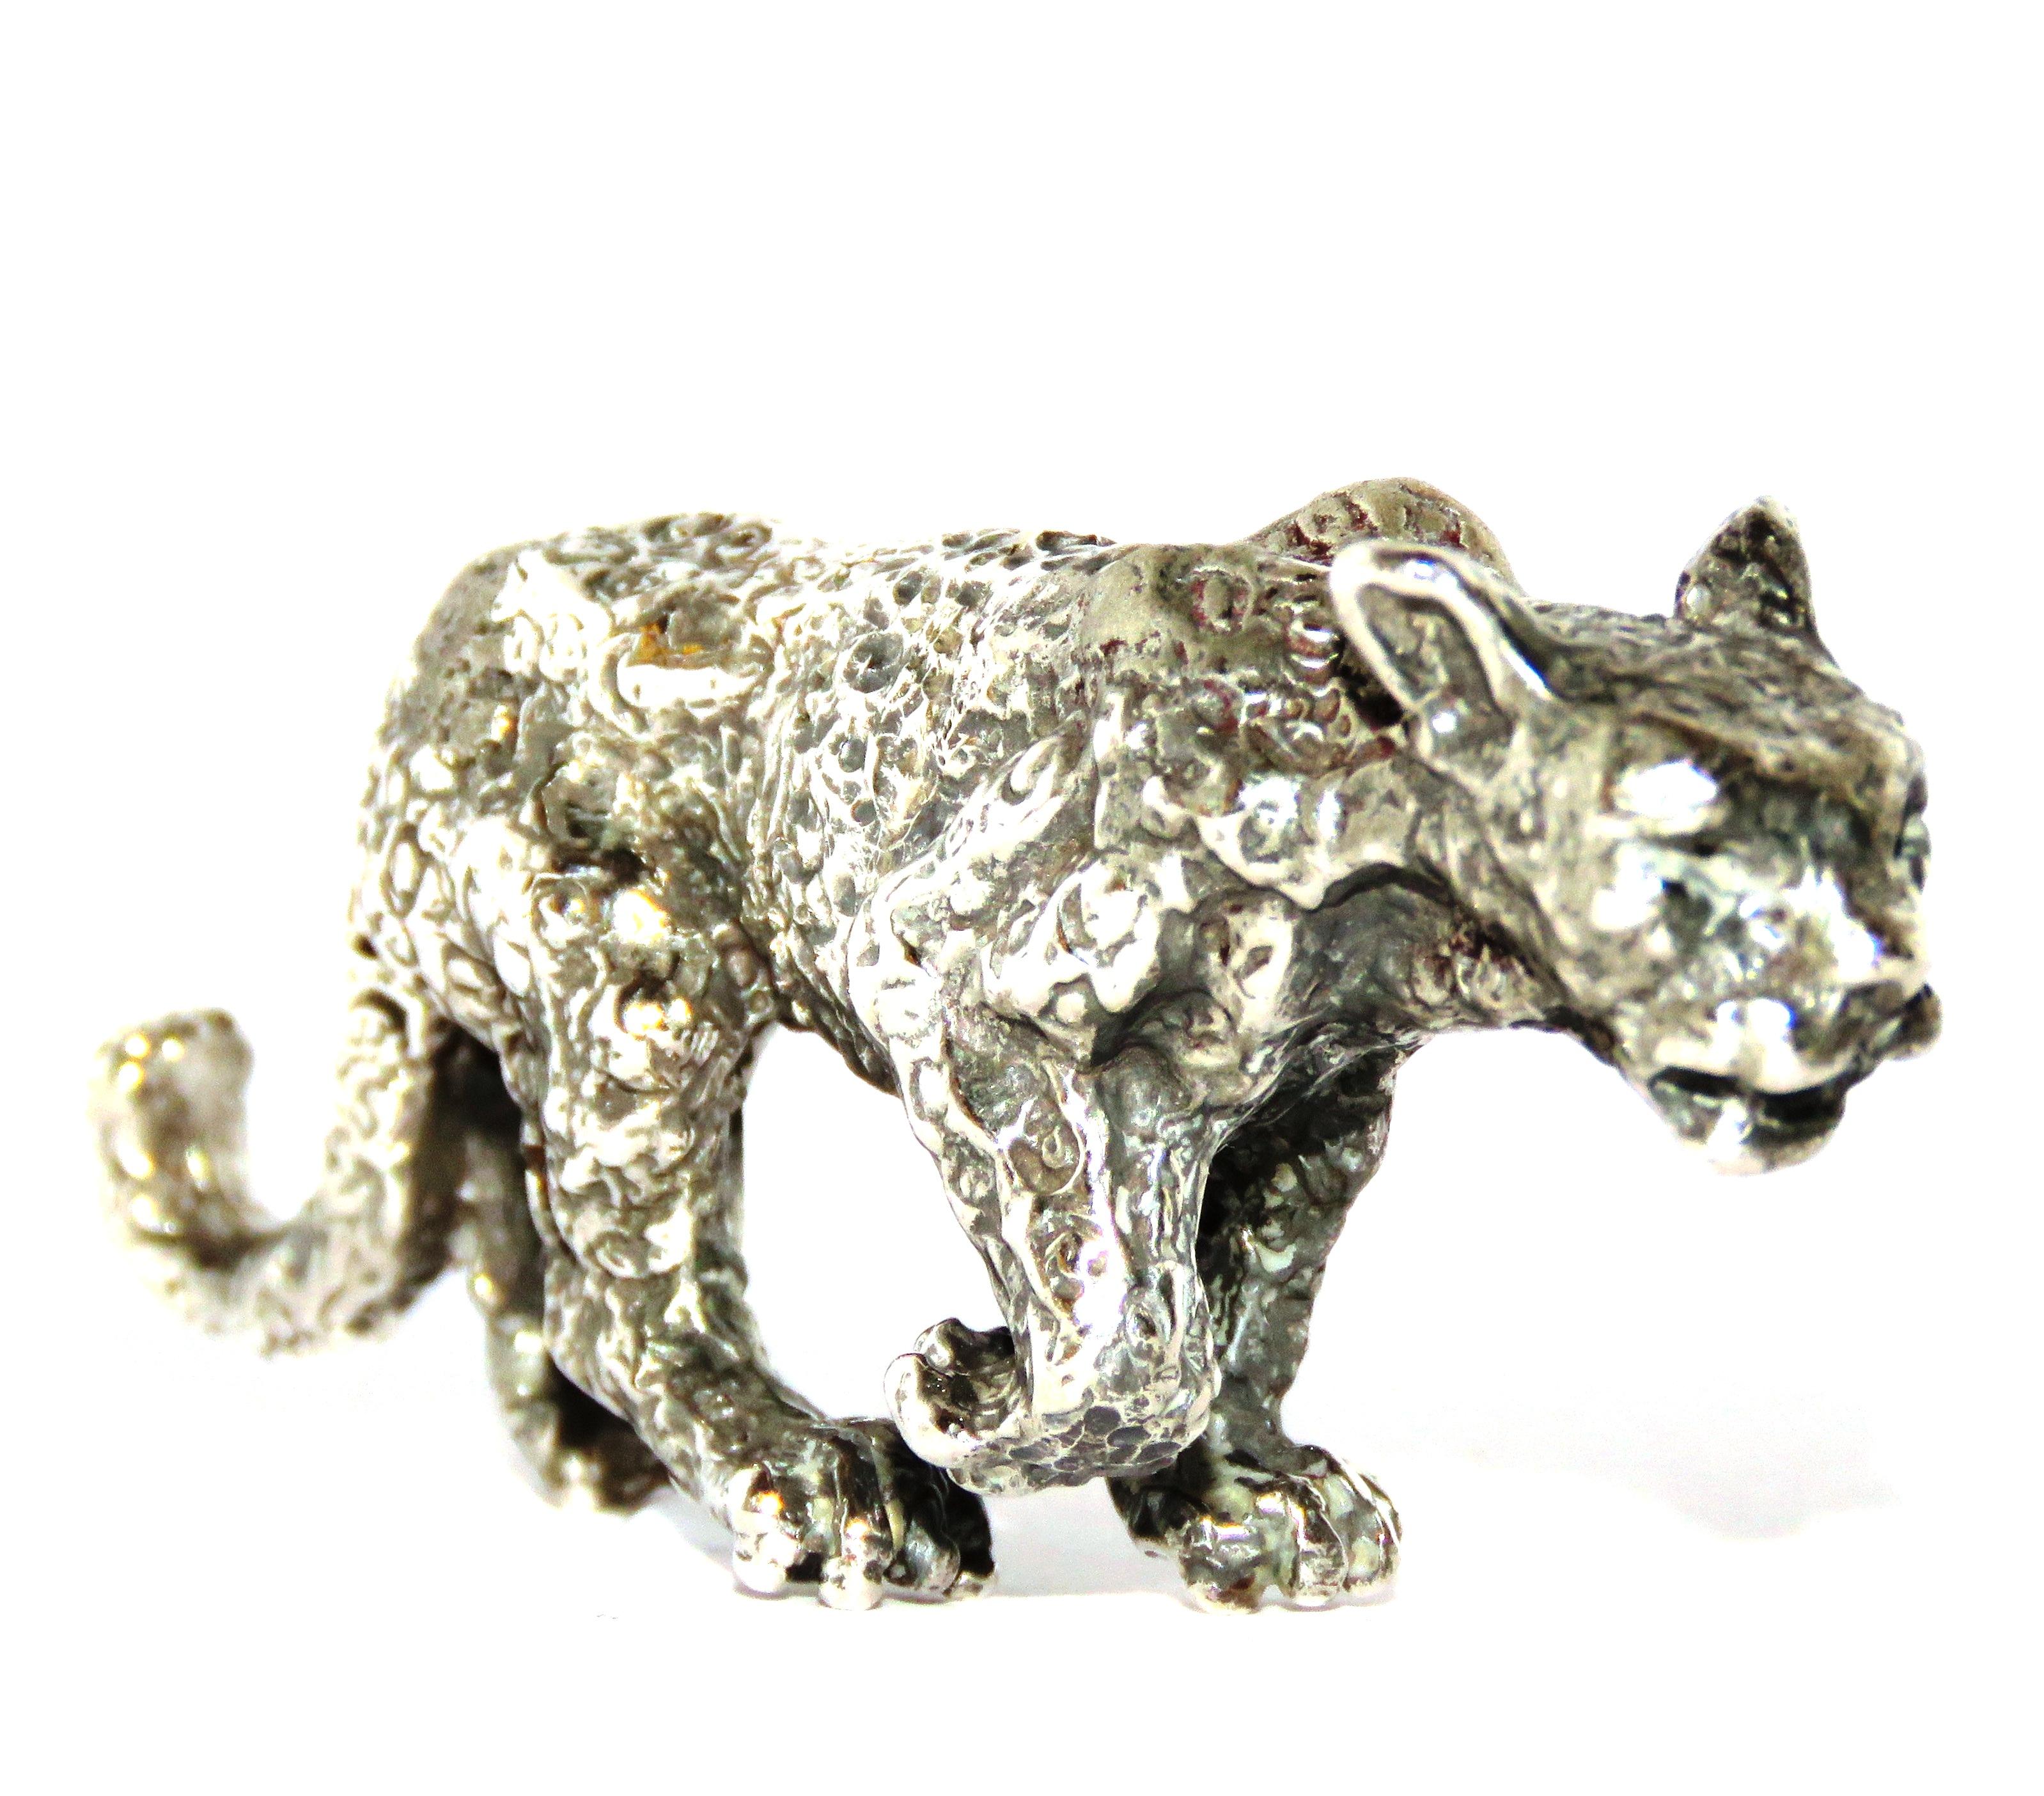 Solide Silber Leopard sehr guten Vintage-Zustand.
Abmessungen: Höhe 31 mm / 1,220 Zoll - Länge 80 mm / 3,149 Zoll - Gewicht 75 Gramm.
Es  ist mit der italienischen Silbermarke 800 gestempelt - italienisches Markenzeichen 235AR - Made in